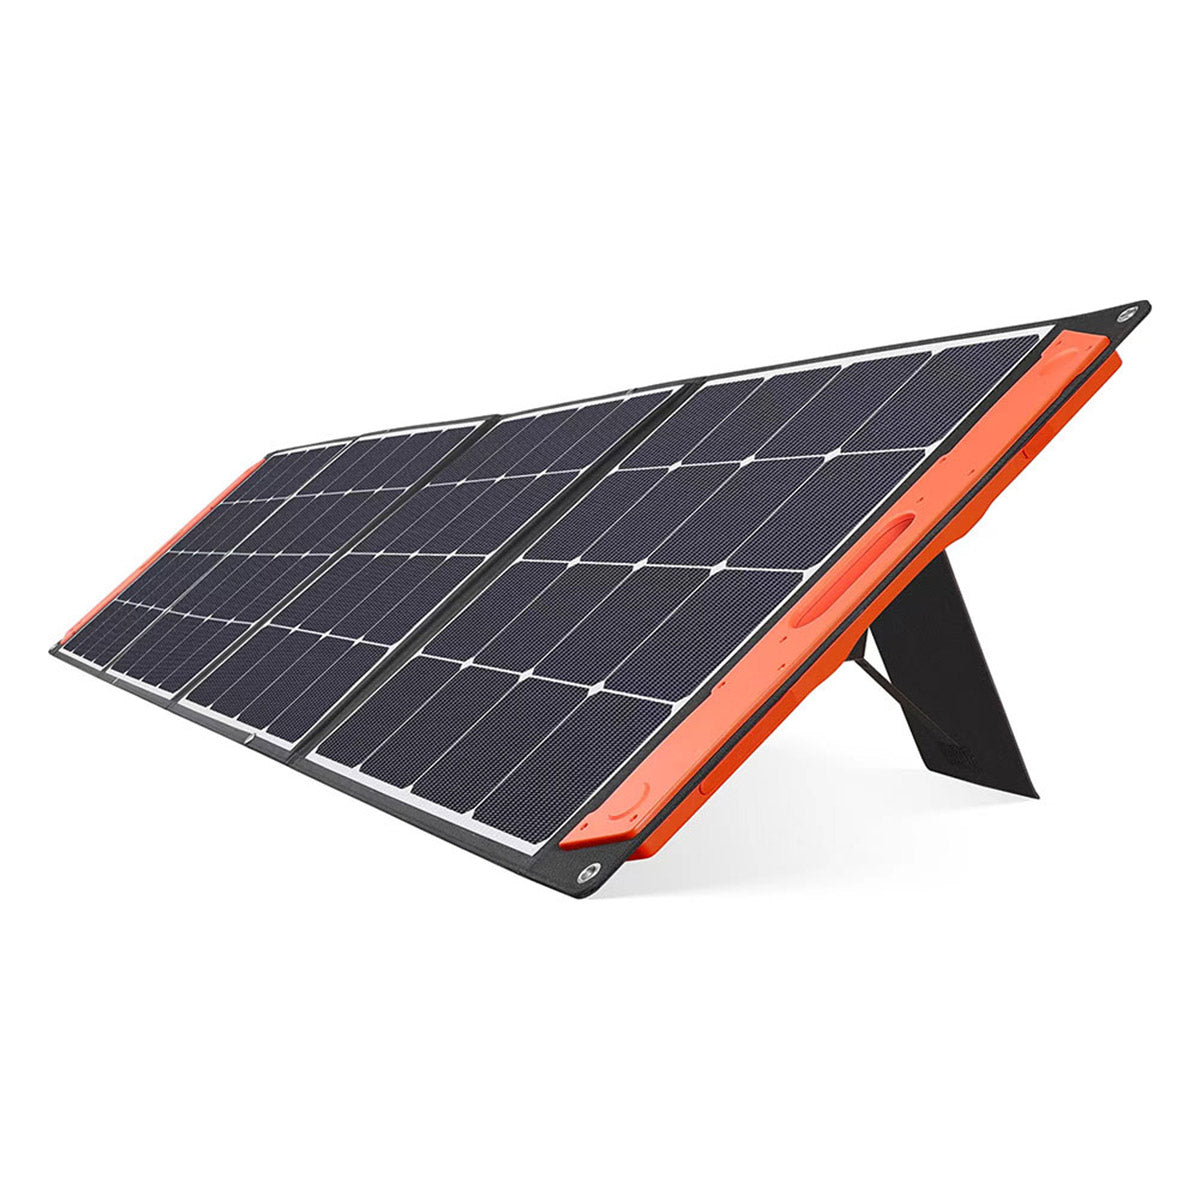 Pannello solare portatile fotografia stock. Immagine di metallo - 91681000